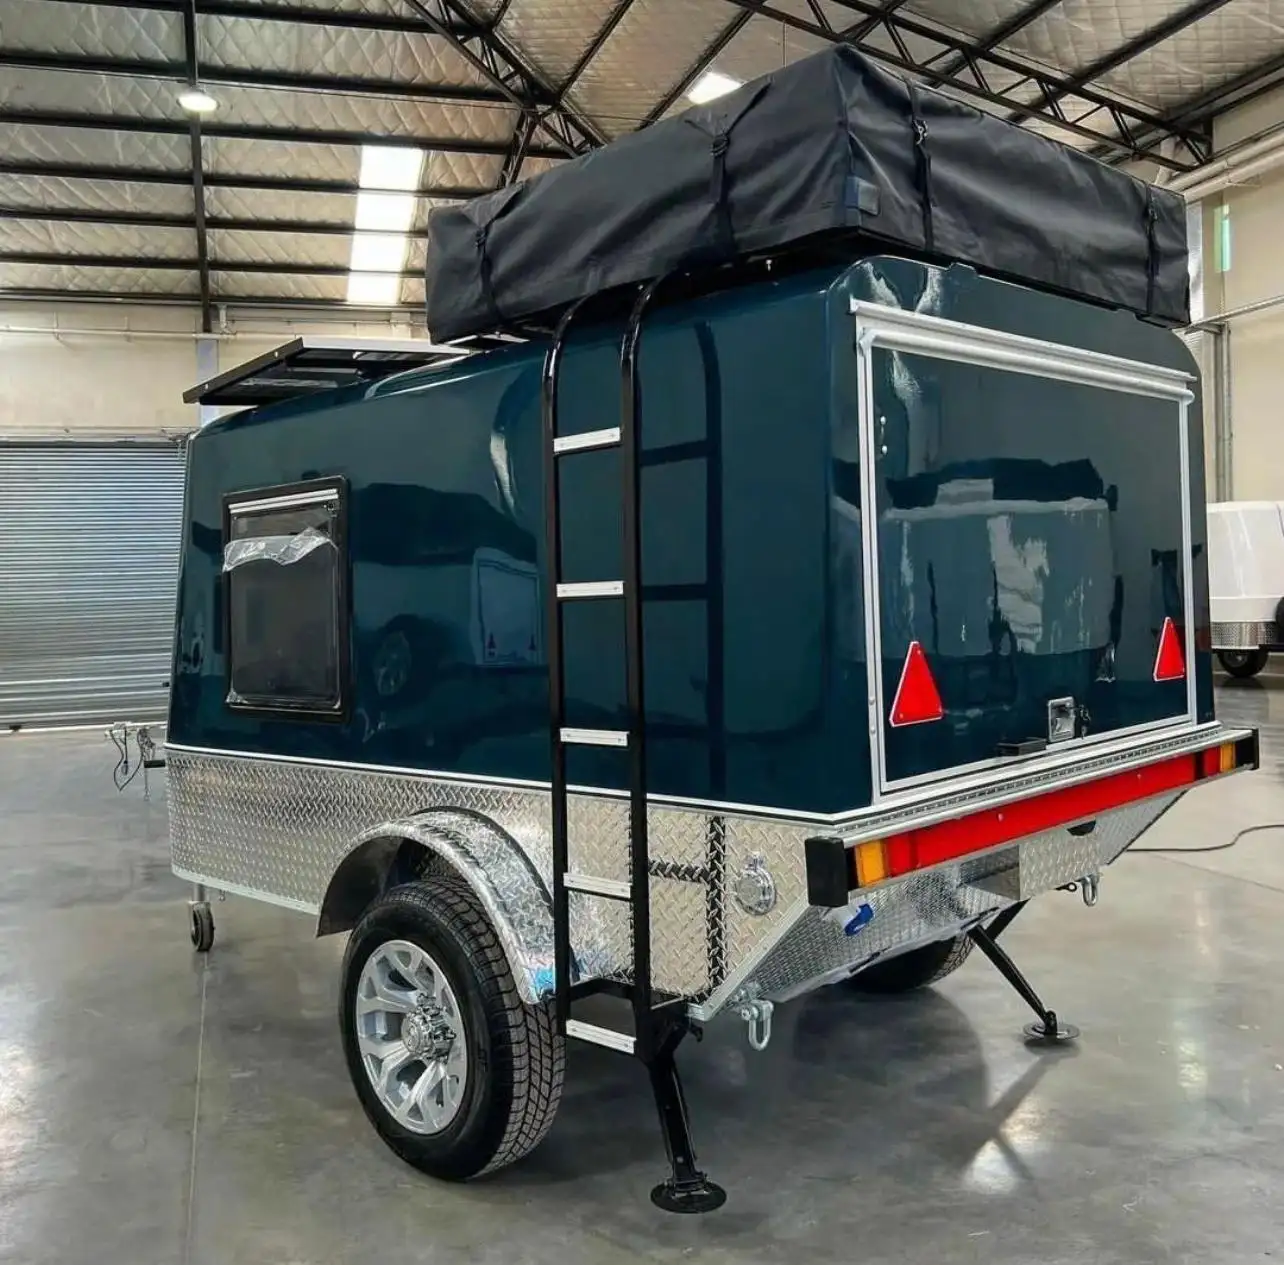 Novo Design Teardrop One Stop Caravan Fabricante Trailer Viagem Camping Caravan Luz Dobrável Off Road Pop Up Rv Camper